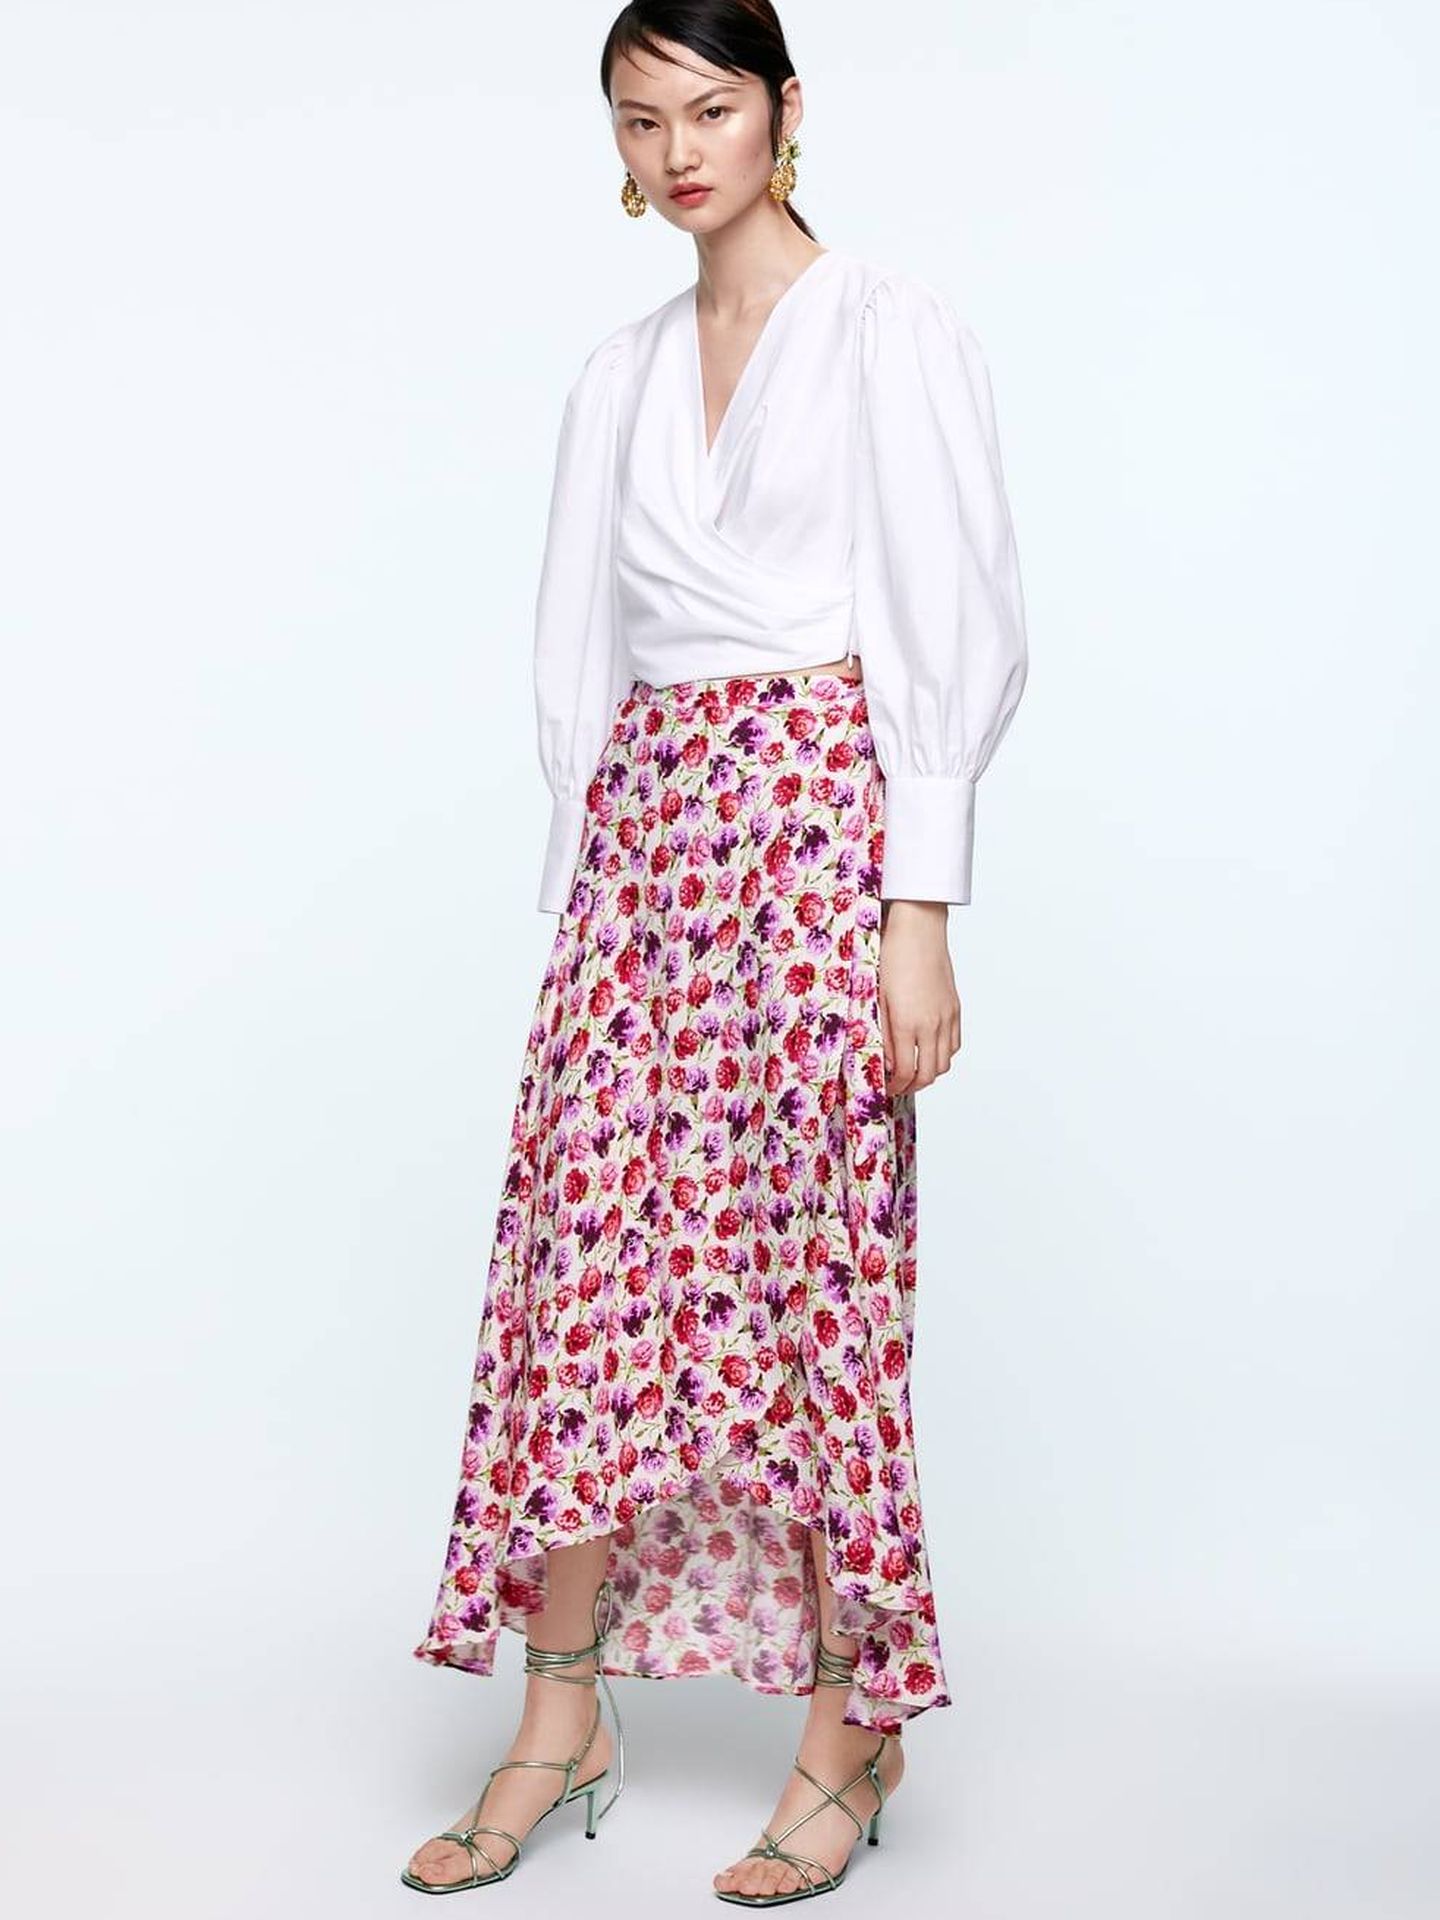 La falda que Alba Díaz luce tal y como aparece en la shop online de Zara.  (Cortesía)